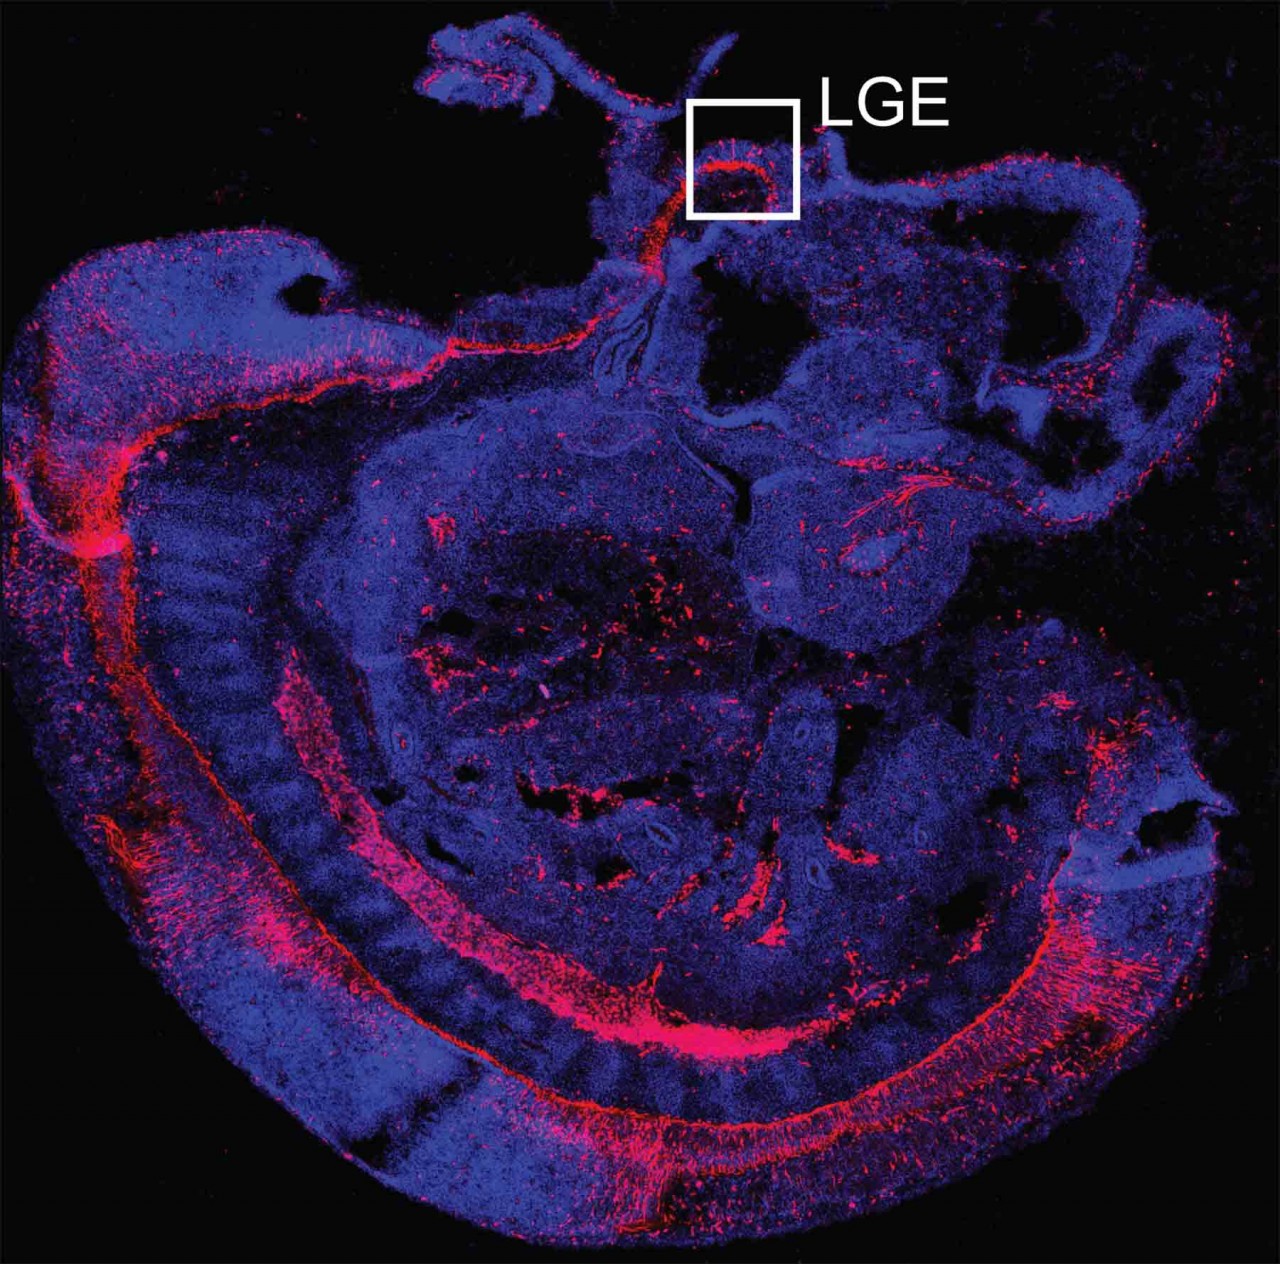 Это изображение было сделано на 10 день развития эмбриона мыши. Красным подсвечены области, в которых уже появились клетки-предшественники — они будут «засеивать» развивающийся мозг нейронами. Видна дуга нервной трубки, из которой позже сформируются спинной и головной мозг. Развитие полосатого тела начинается с активности в области, отмеченной прямоугольником, это латеральный ганглионарный бугорок.